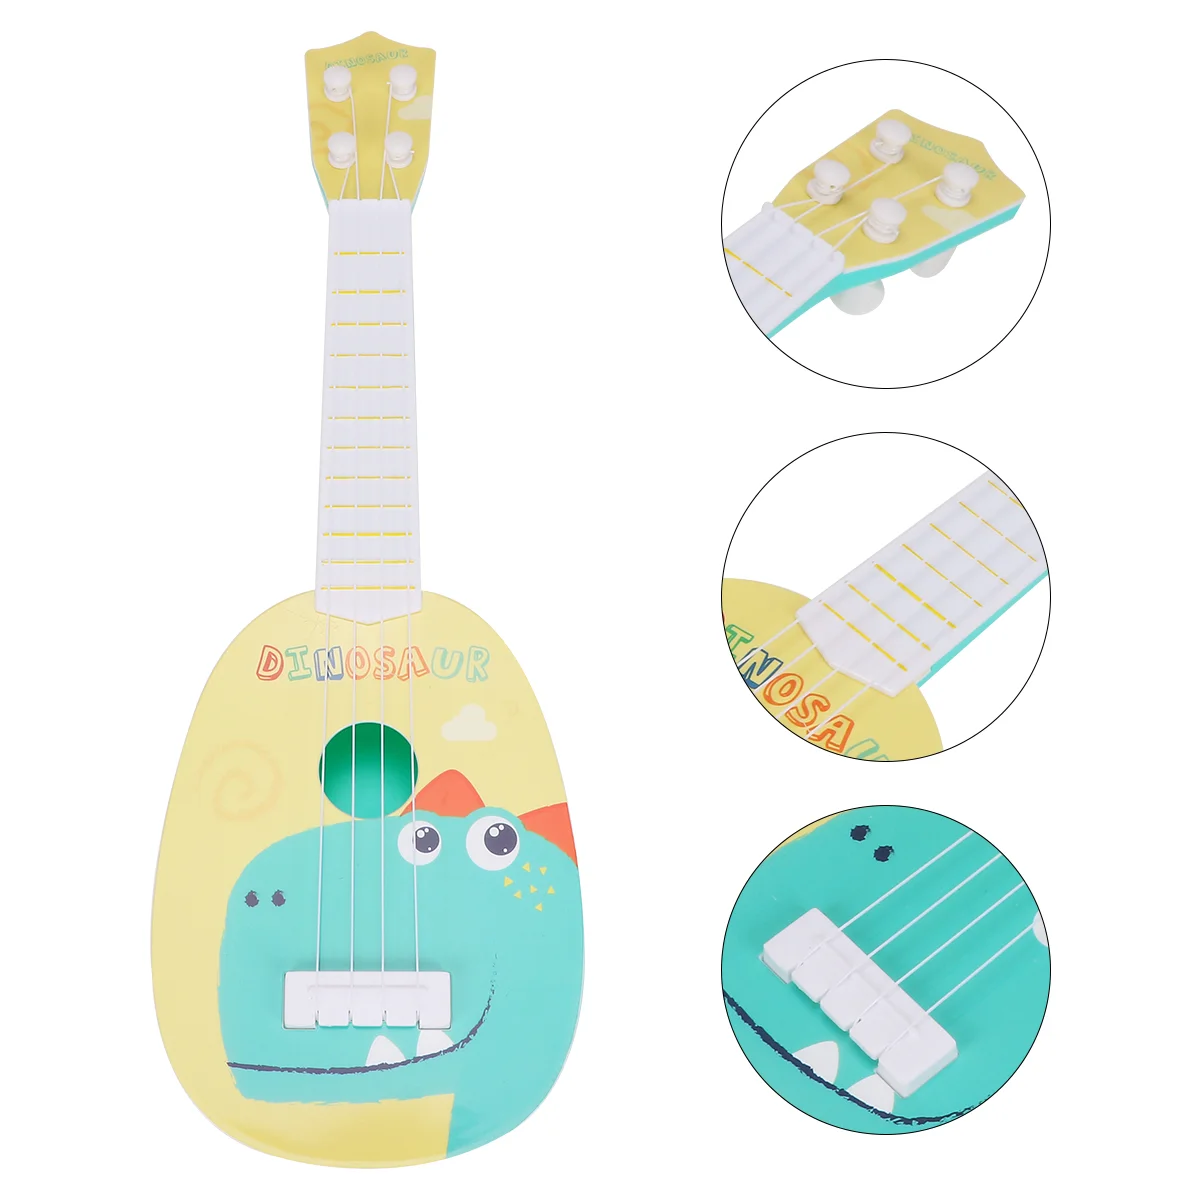 Vaikai Havajų Gitara 4 Stygų Modelis Bamblys Muzikos Instrumentai, Gitara Švietimo Žaislai, Vaikams, Vaikui, Vaikams